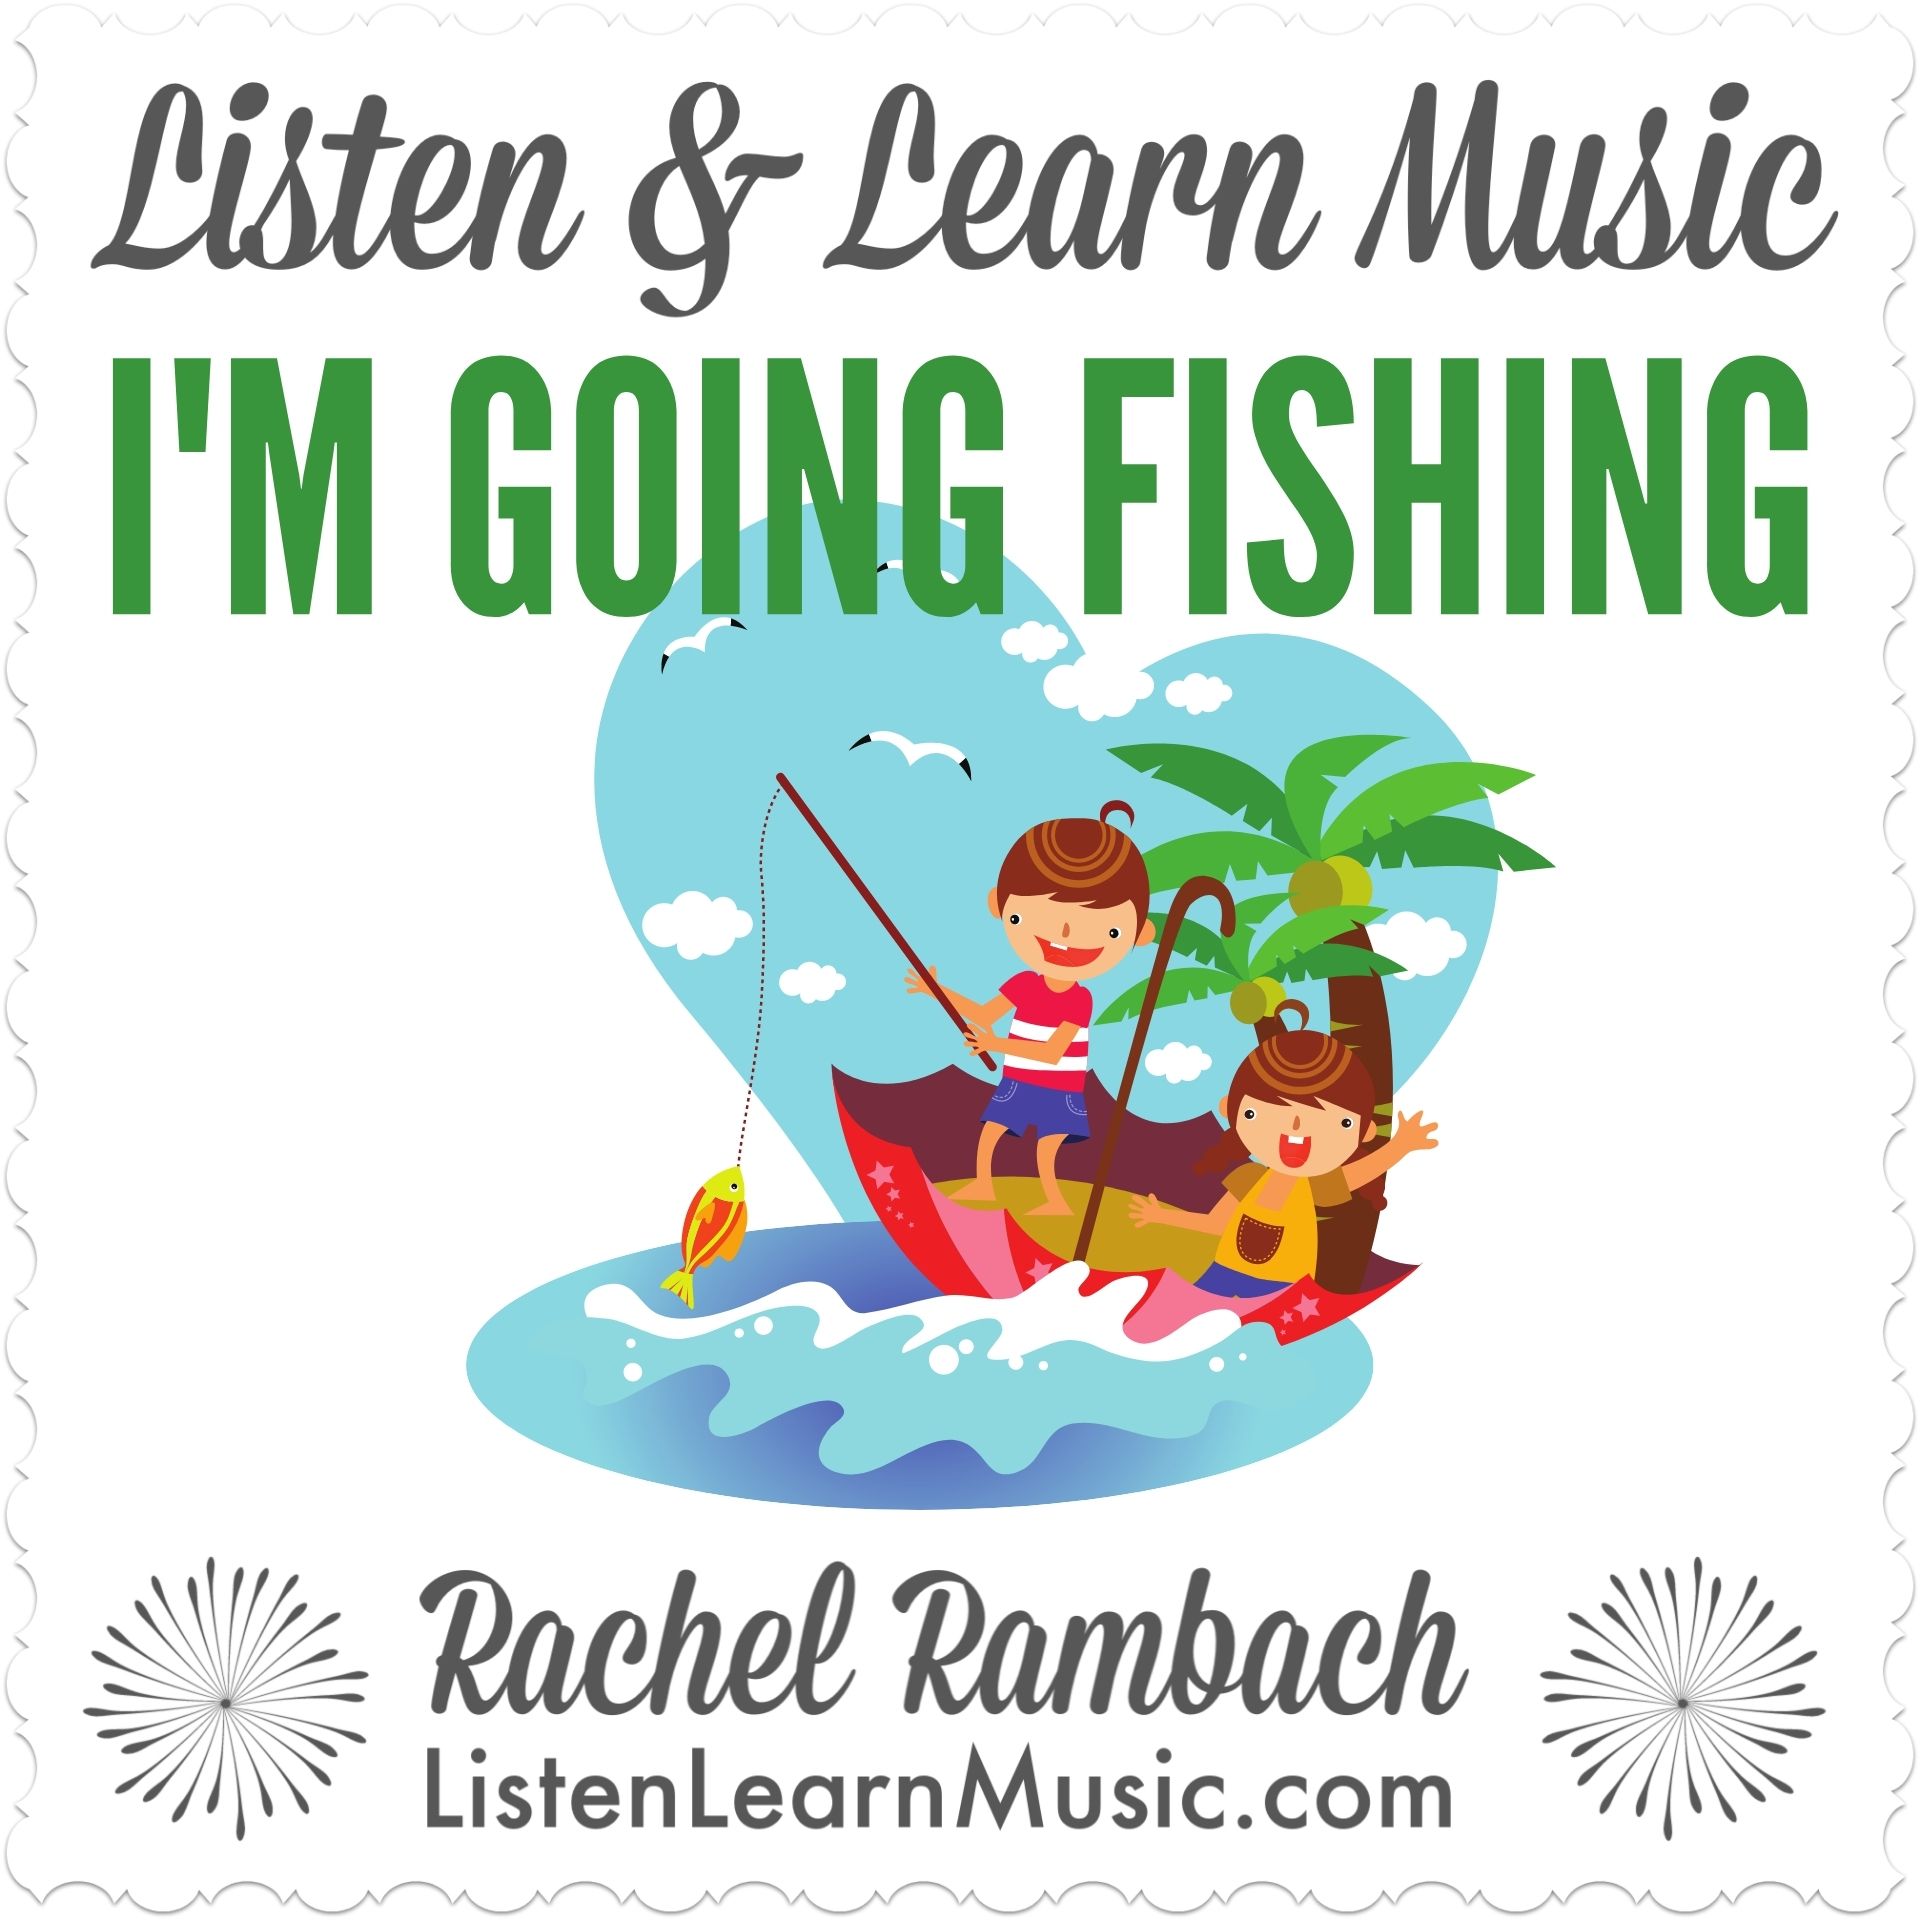 I'm Going Fishing  Listen & Learn Music